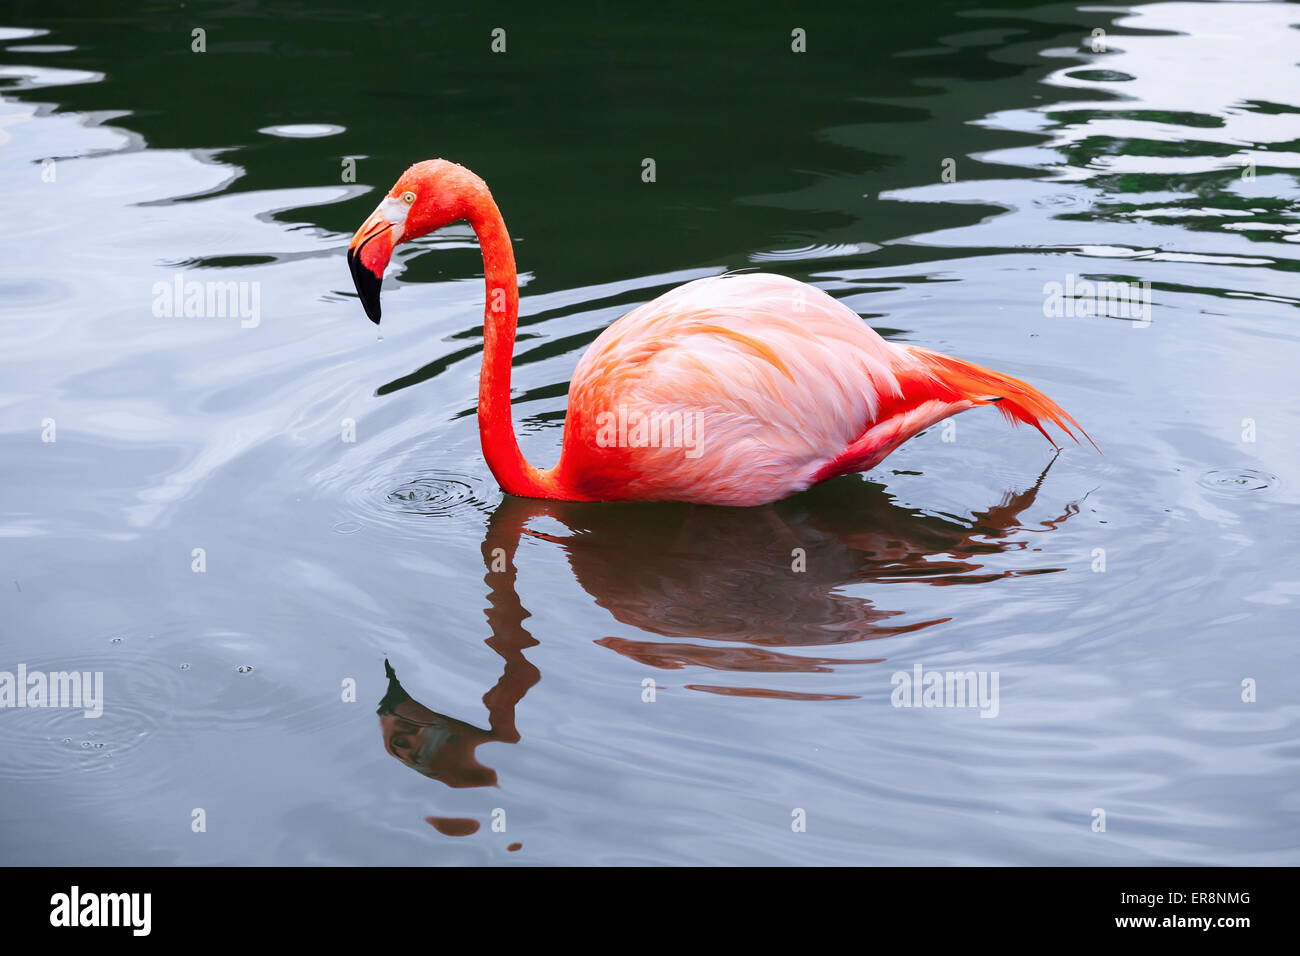 Flamant rose marche dans l'eau avec des réflexions Banque D'Images